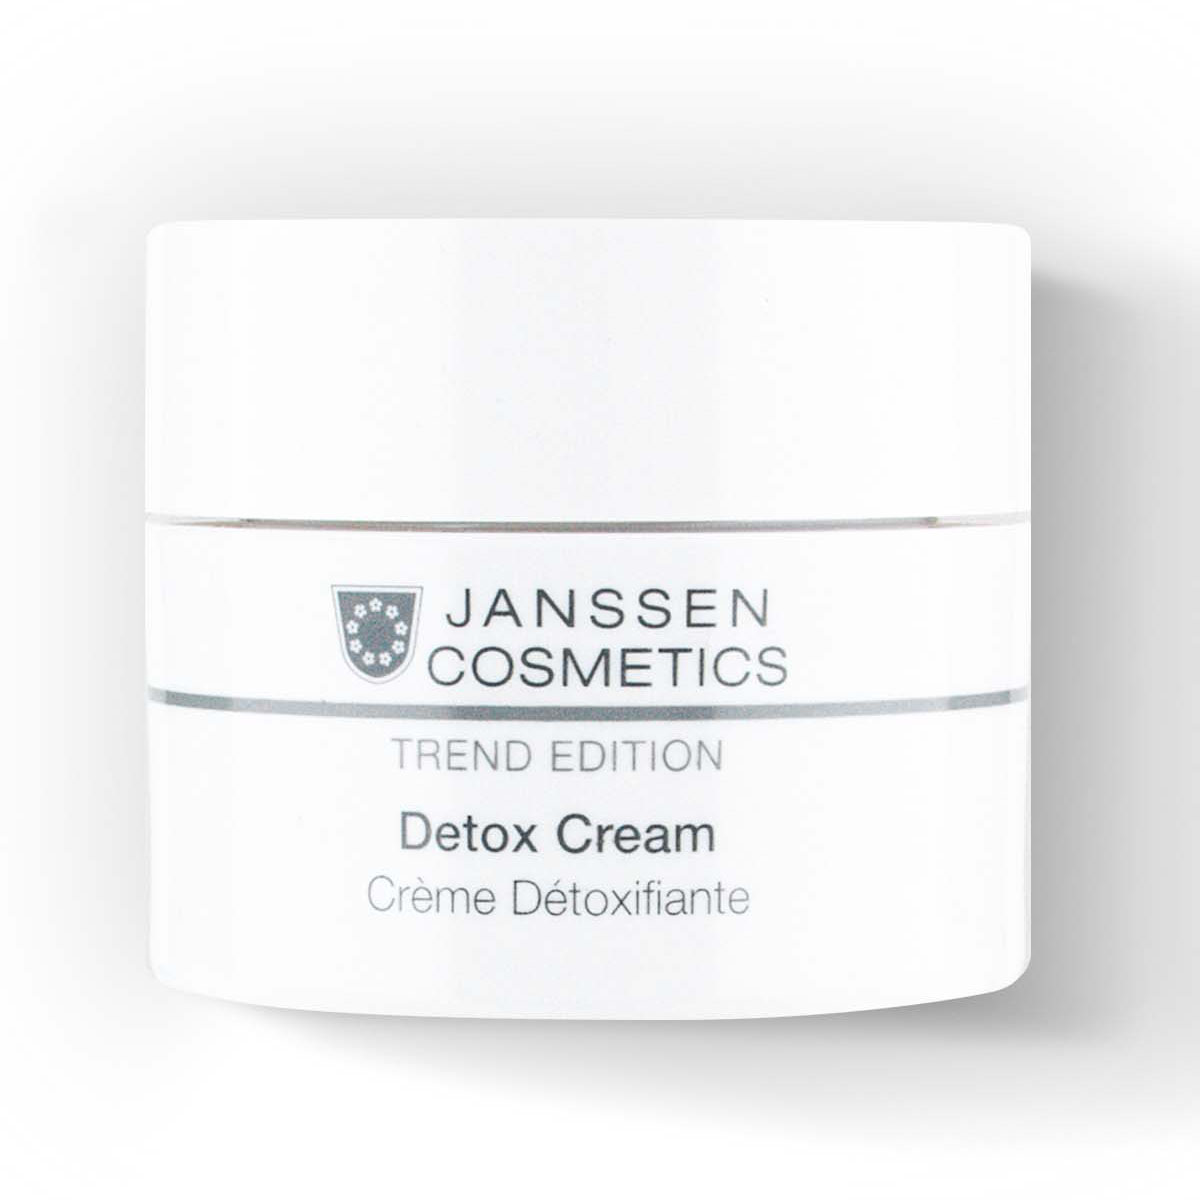 Janssen Cosmetics Детокс-крем Detox Cream, 50 мл (Janssen Cosmetics, Trend Edition)